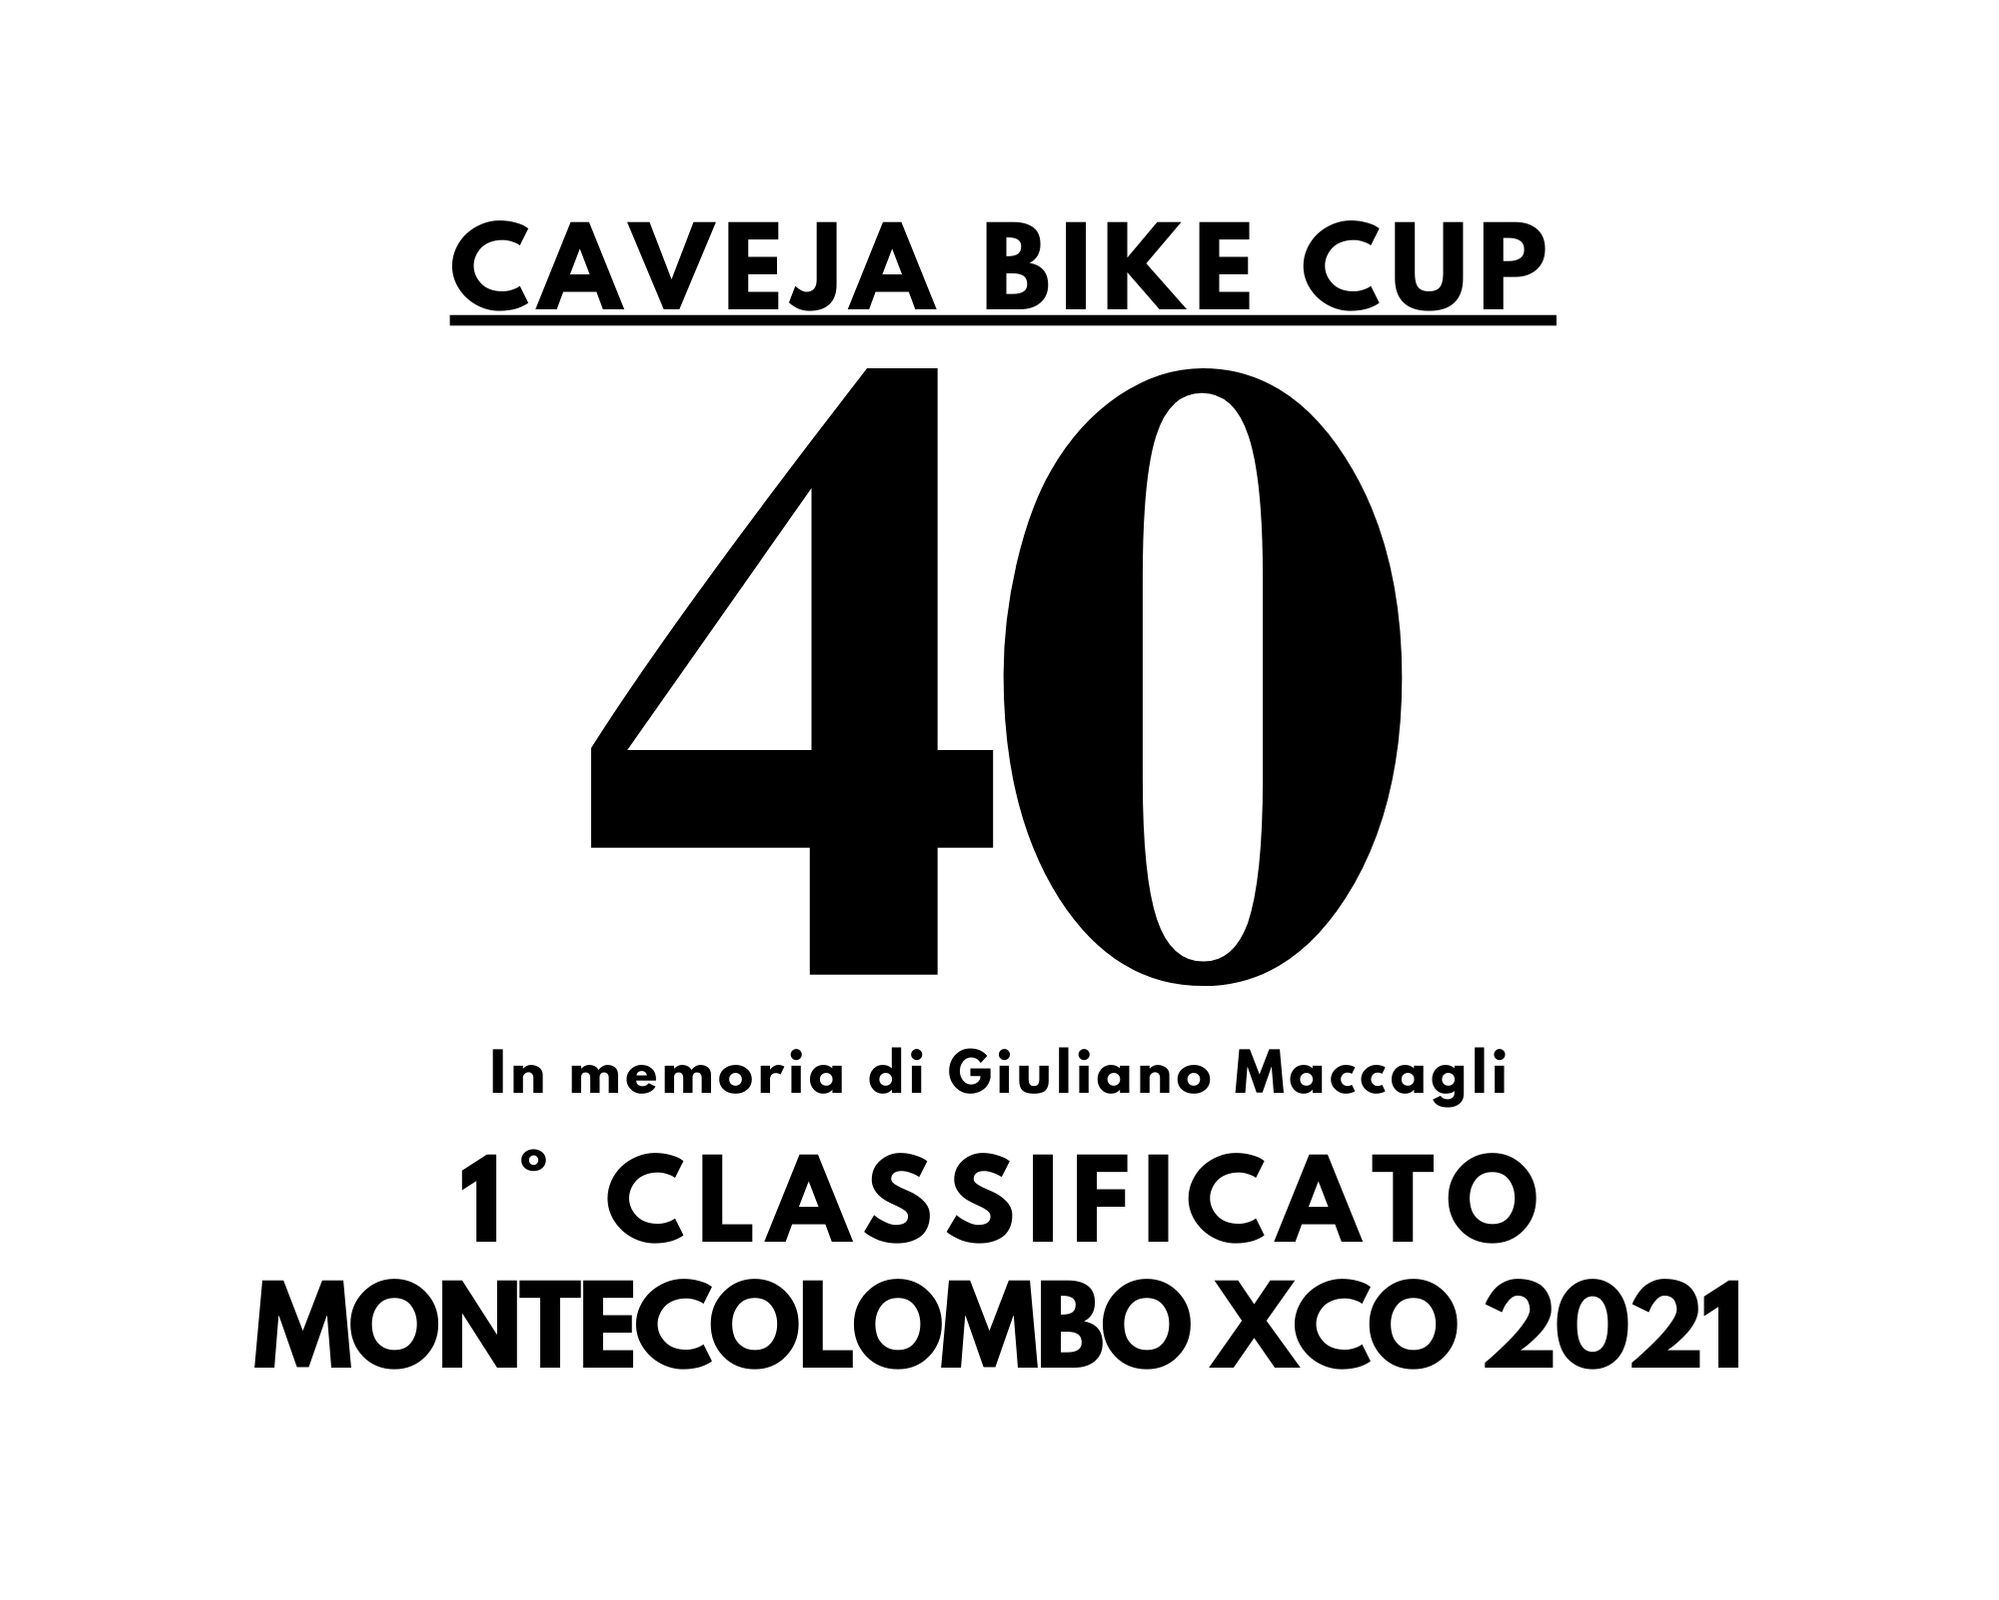 MONTECOLOMBO XCO in memoria Giuliano Maccagli